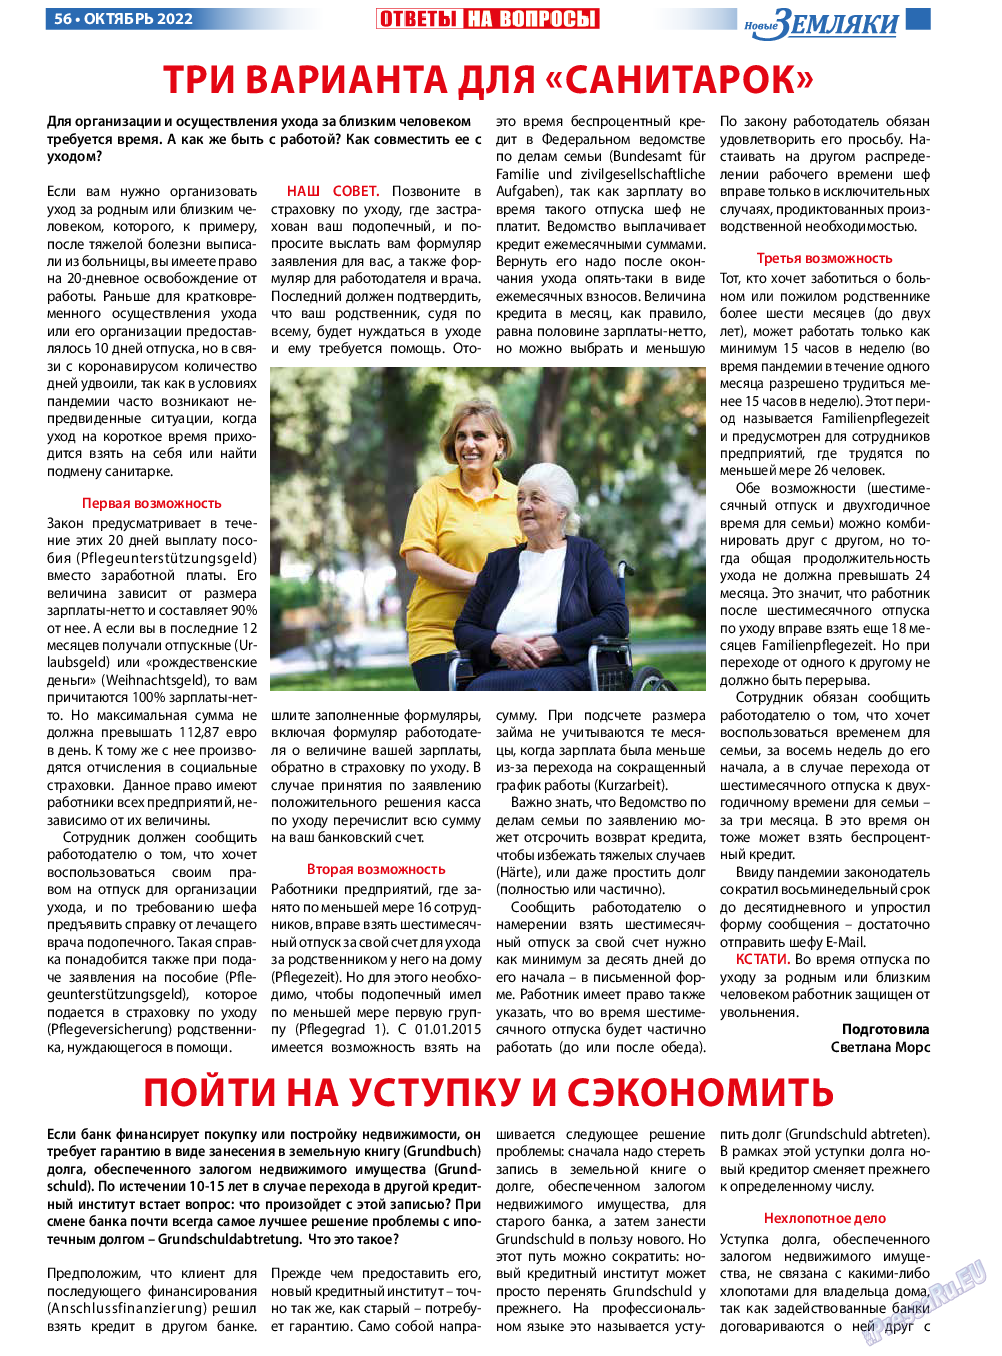 Новые Земляки, газета. 2022 №10 стр.56